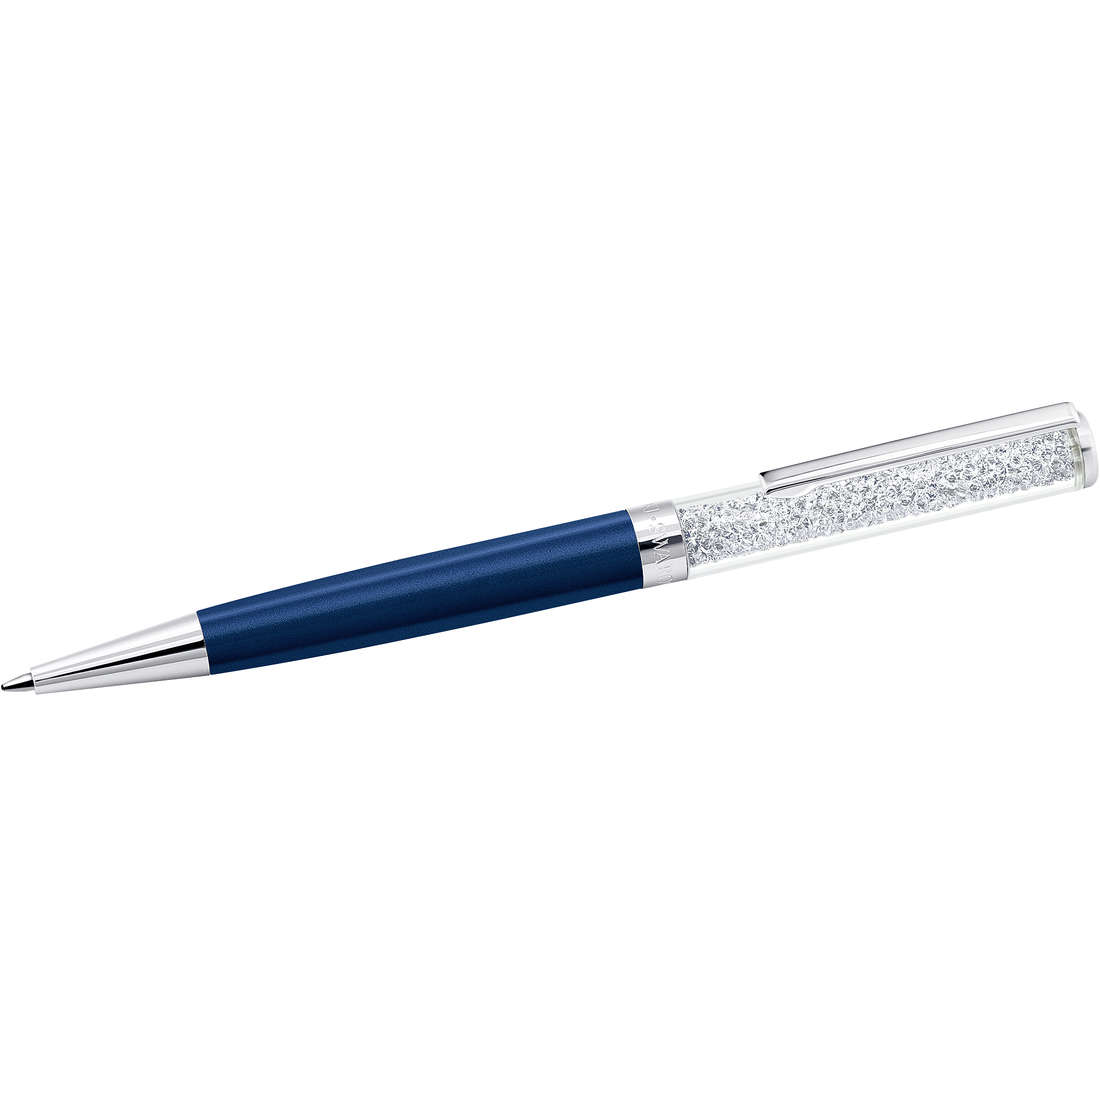 Stift Kugelschreiber Swarovski Crystalline da frau 5351068